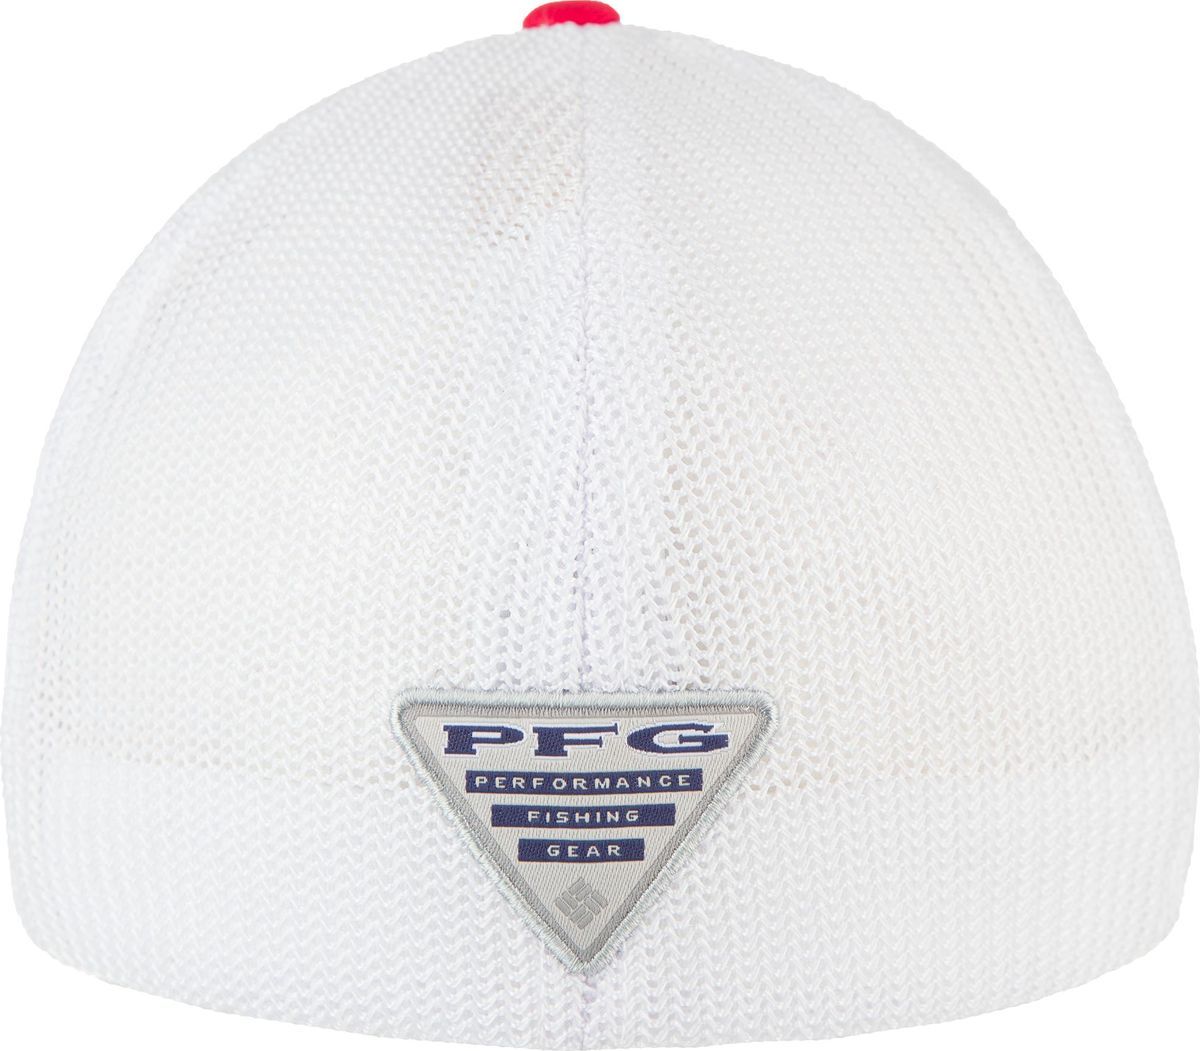  Columbia PFG Mesh Ball Cap, : . 1503971-613.  S/M (56/57)